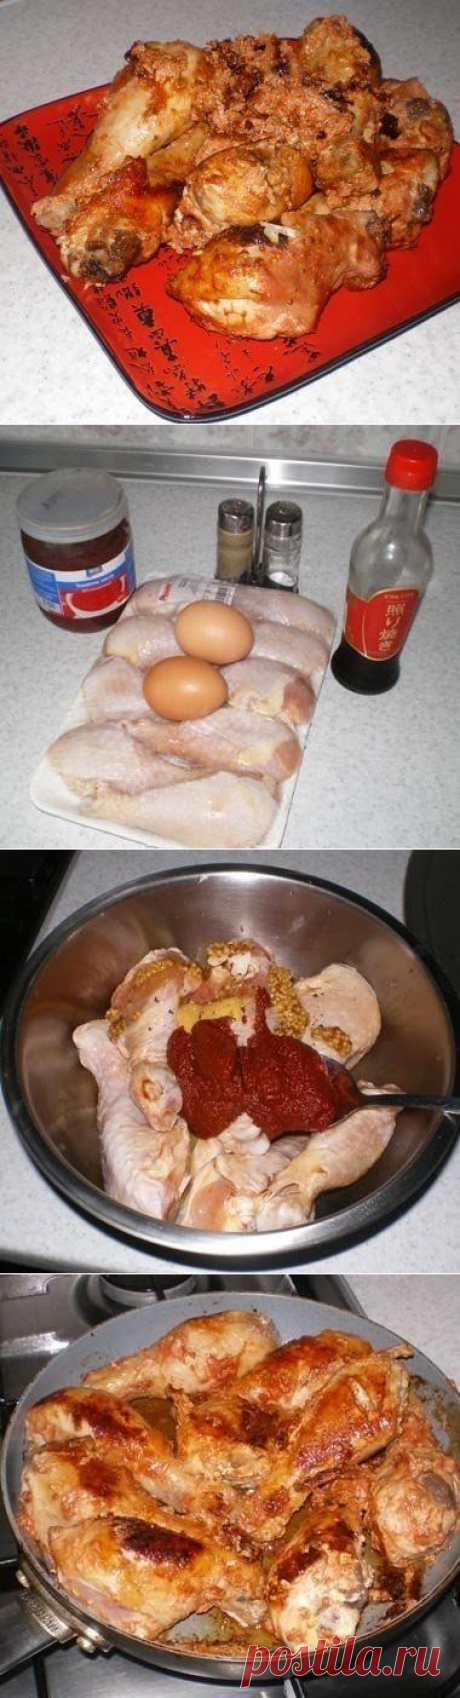 Как приготовить курица римский легион - рецепт, ингридиенты и фотографии